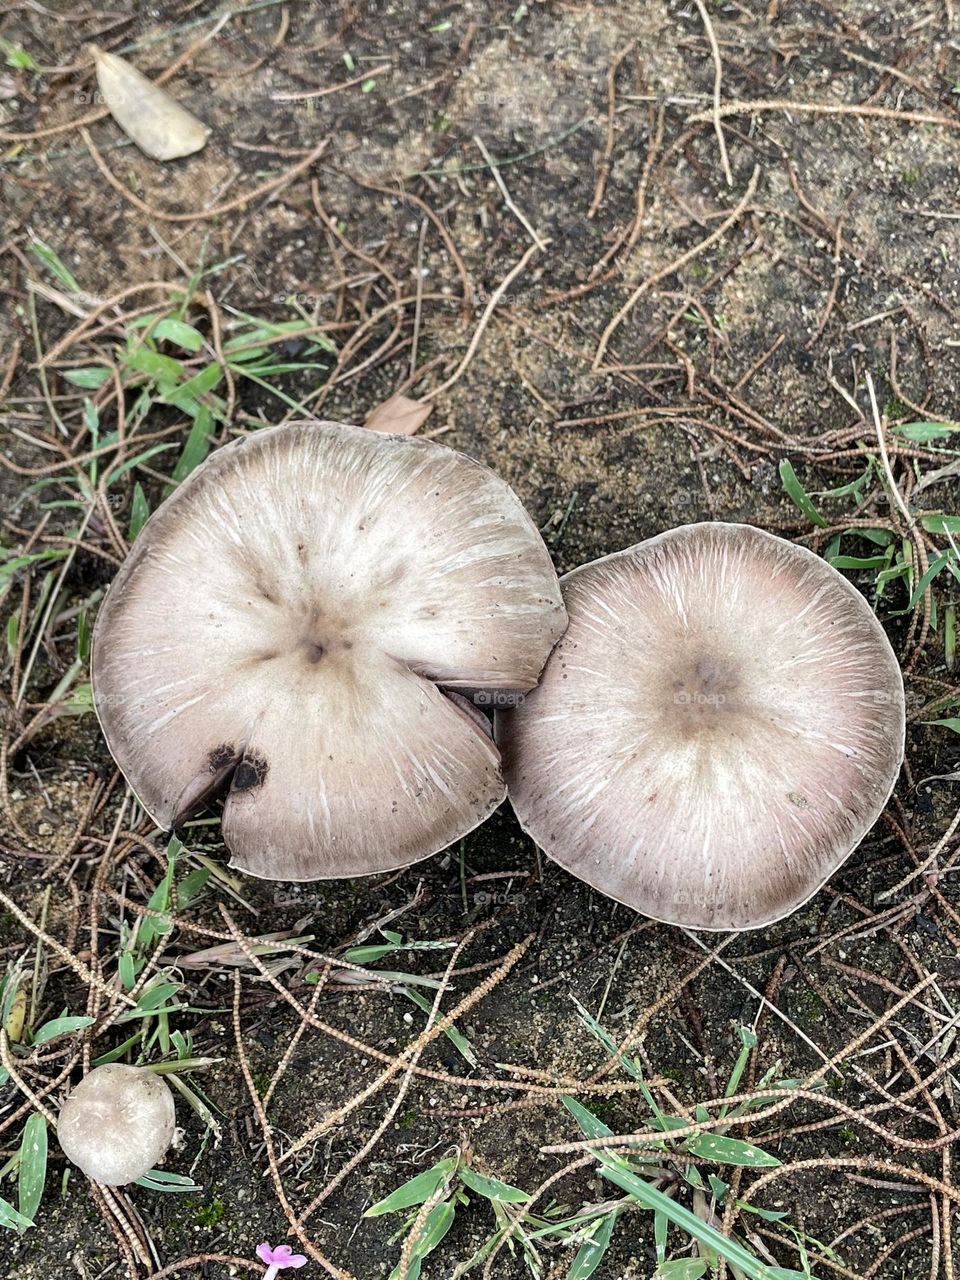 Congumelos, Mushrooms, fungos 